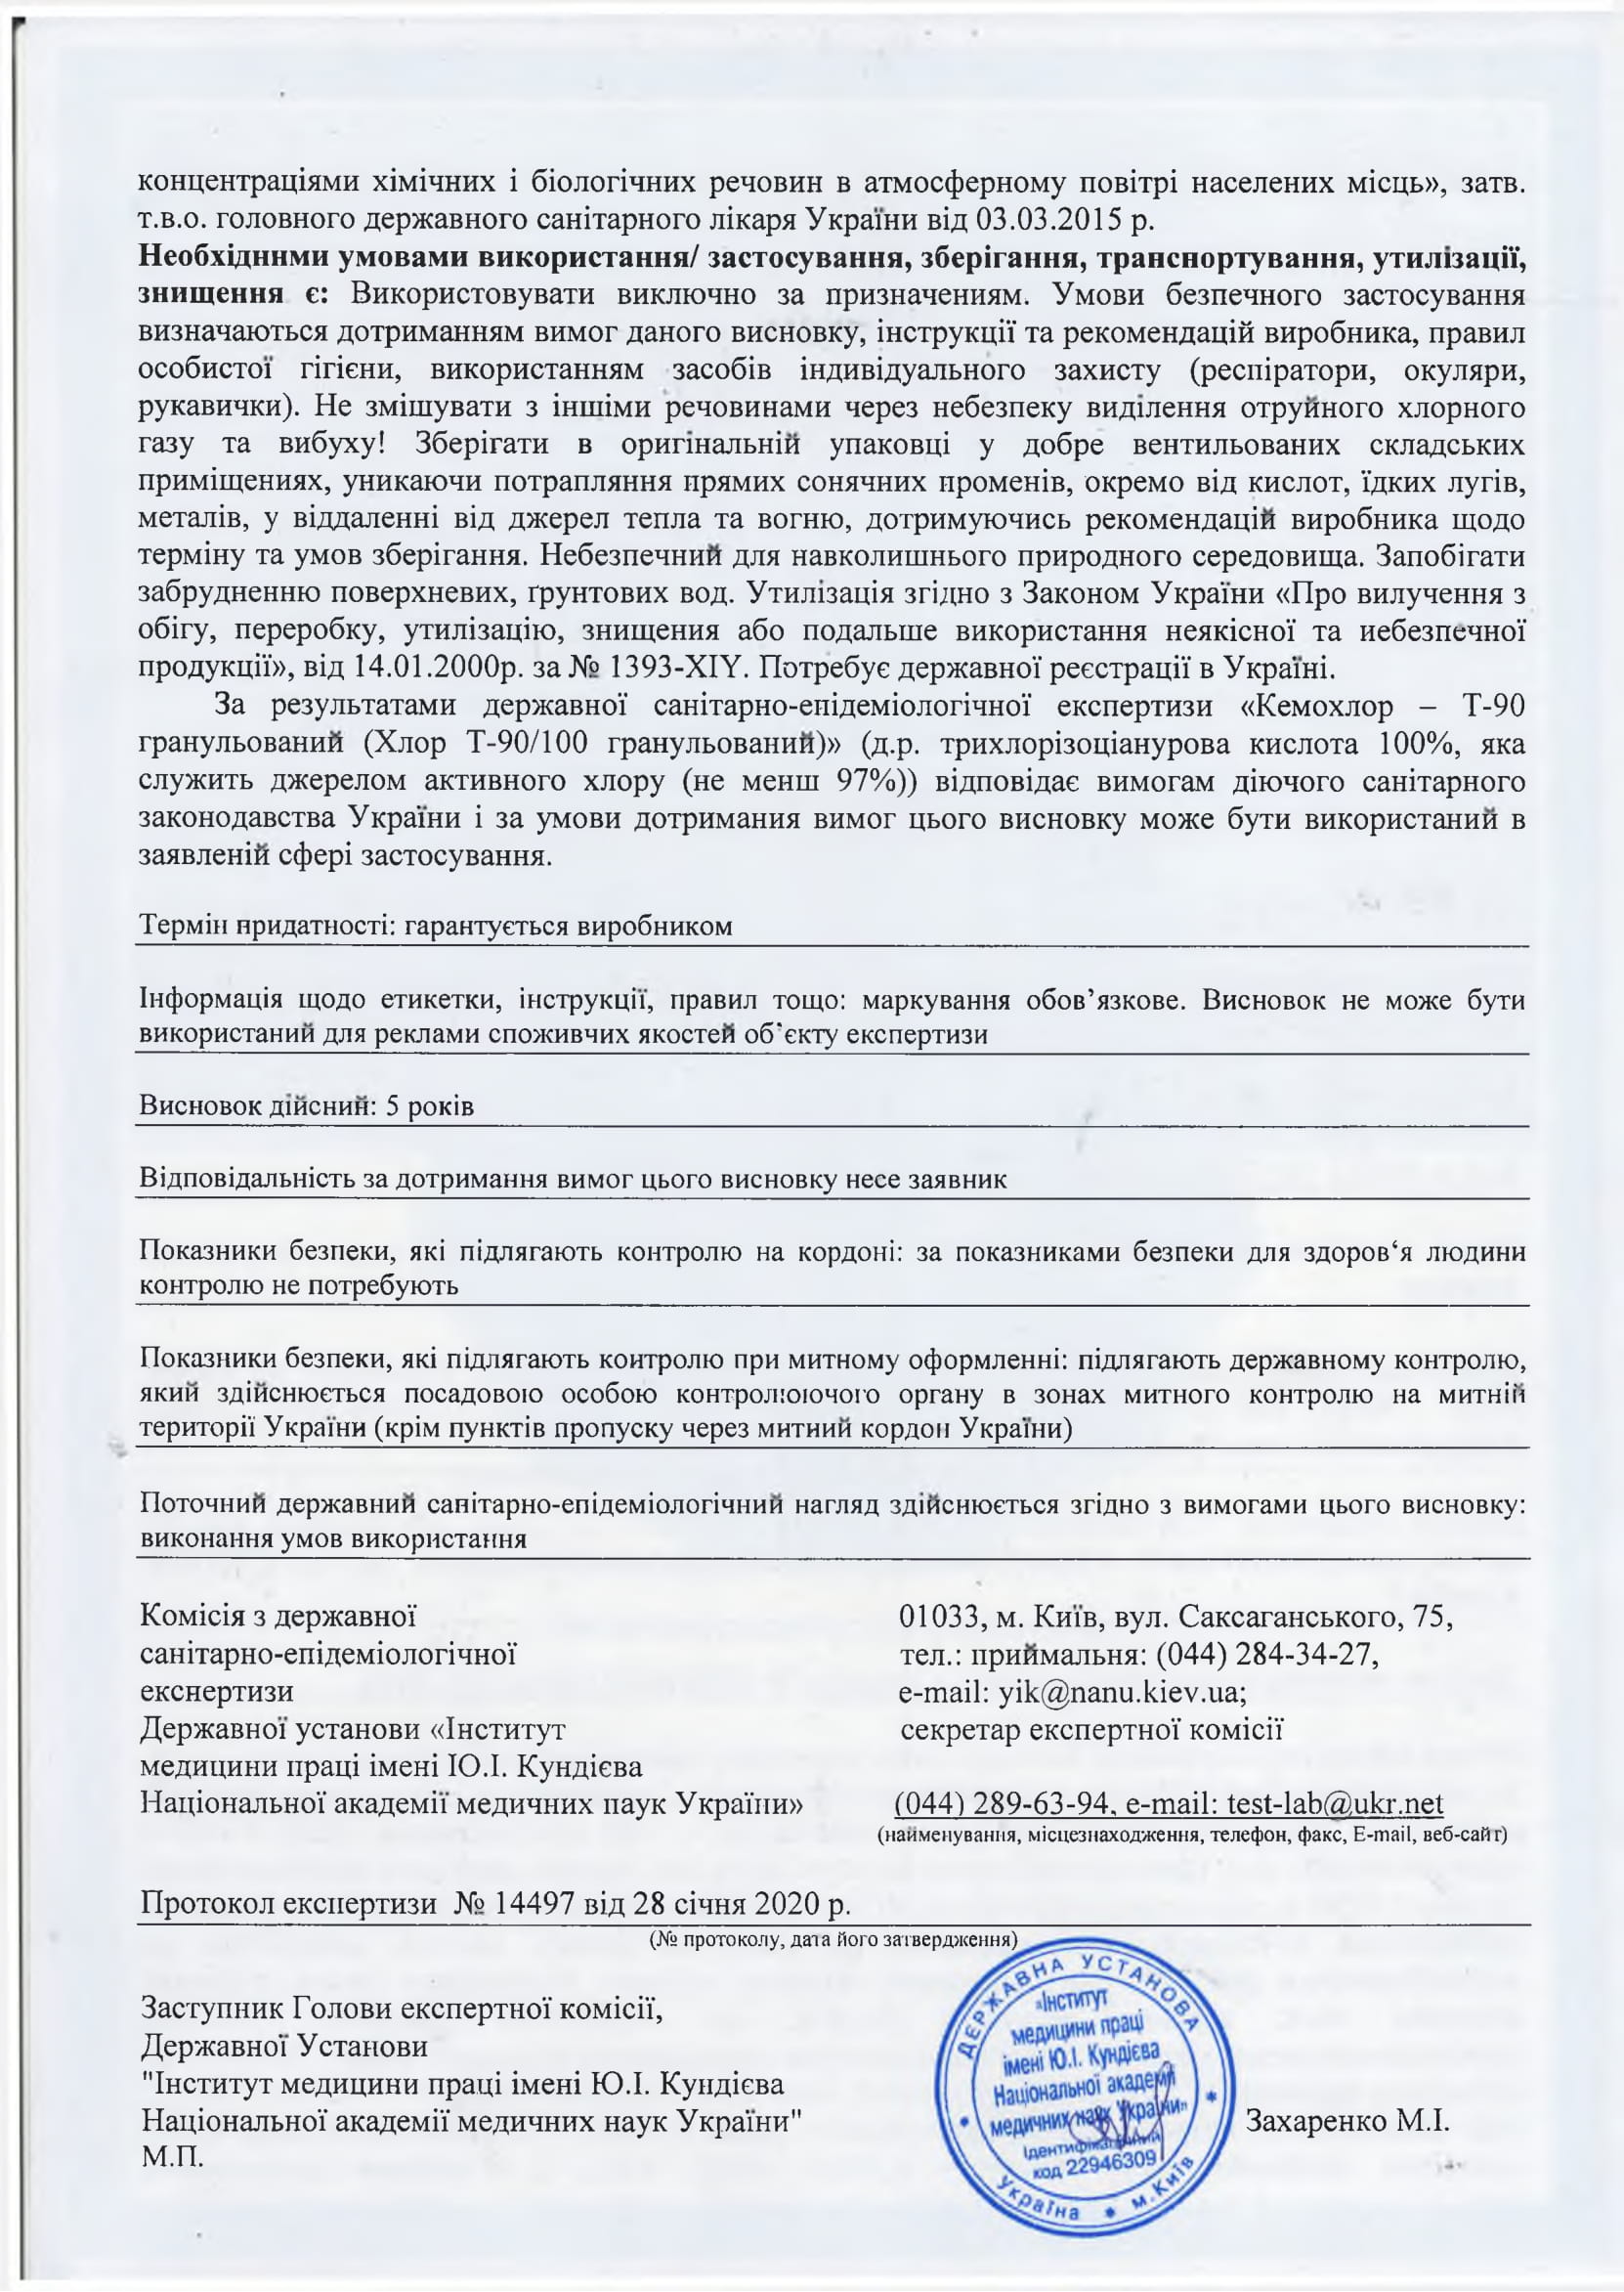 Кемохлор Т-90 гранулированный Chemoform, продавец Евроминерал Украина